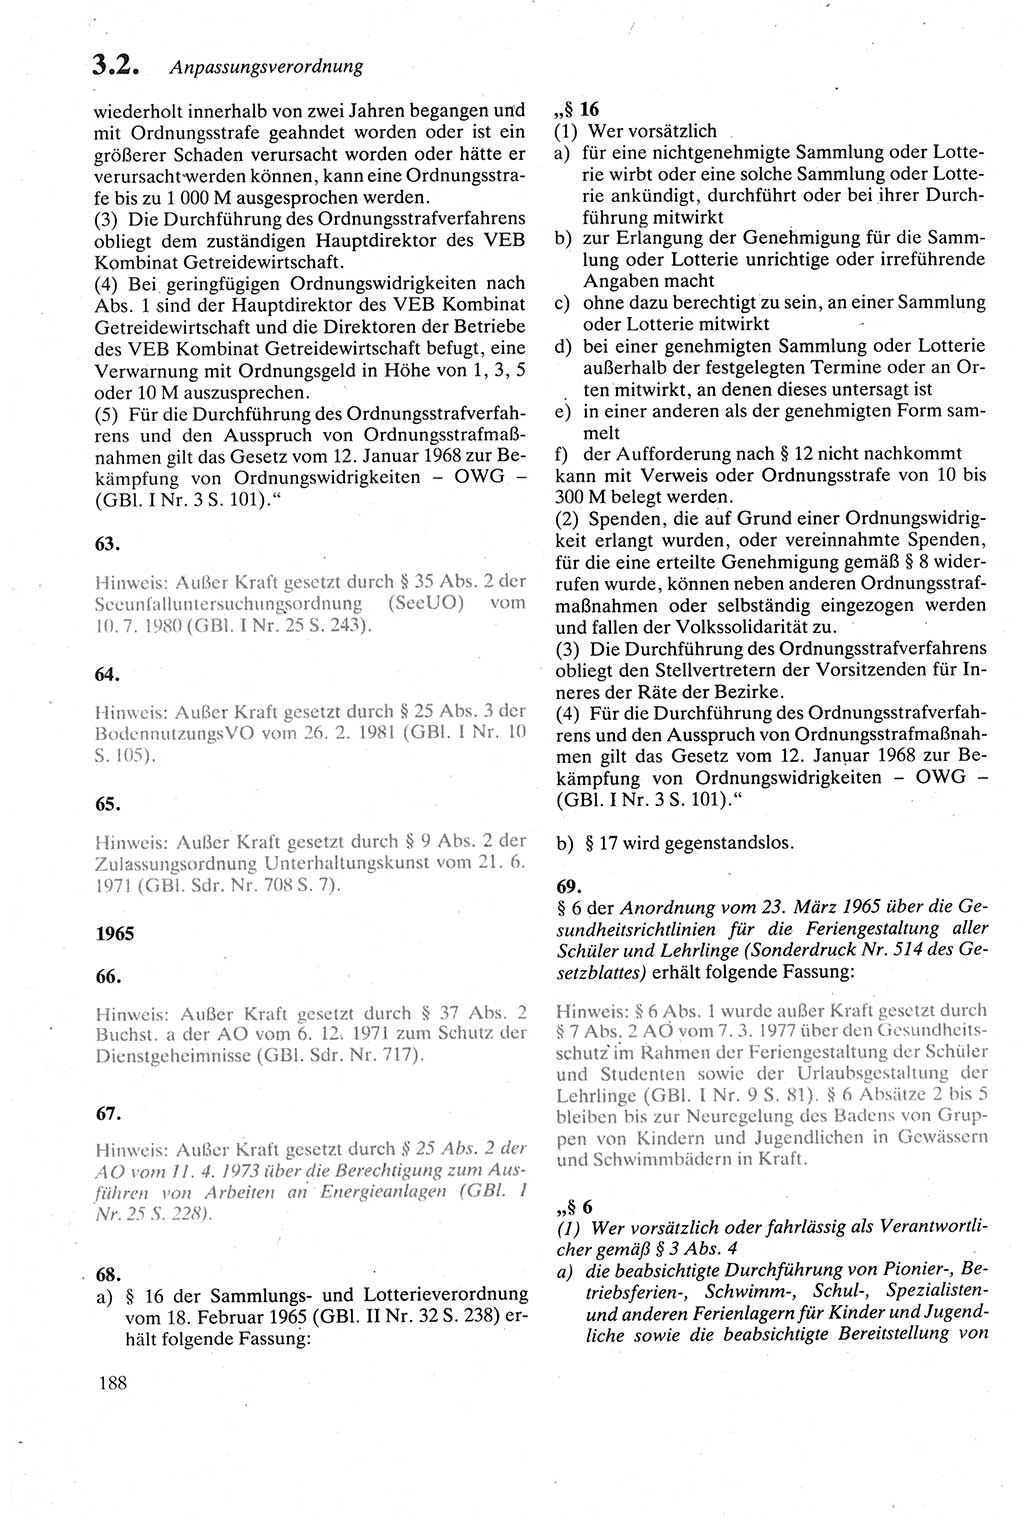 Strafgesetzbuch (StGB) der Deutschen Demokratischen Republik (DDR) sowie angrenzende Gesetze und Bestimmungen 1979, Seite 188 (StGB DDR Ges. Best. 1979, S. 188)